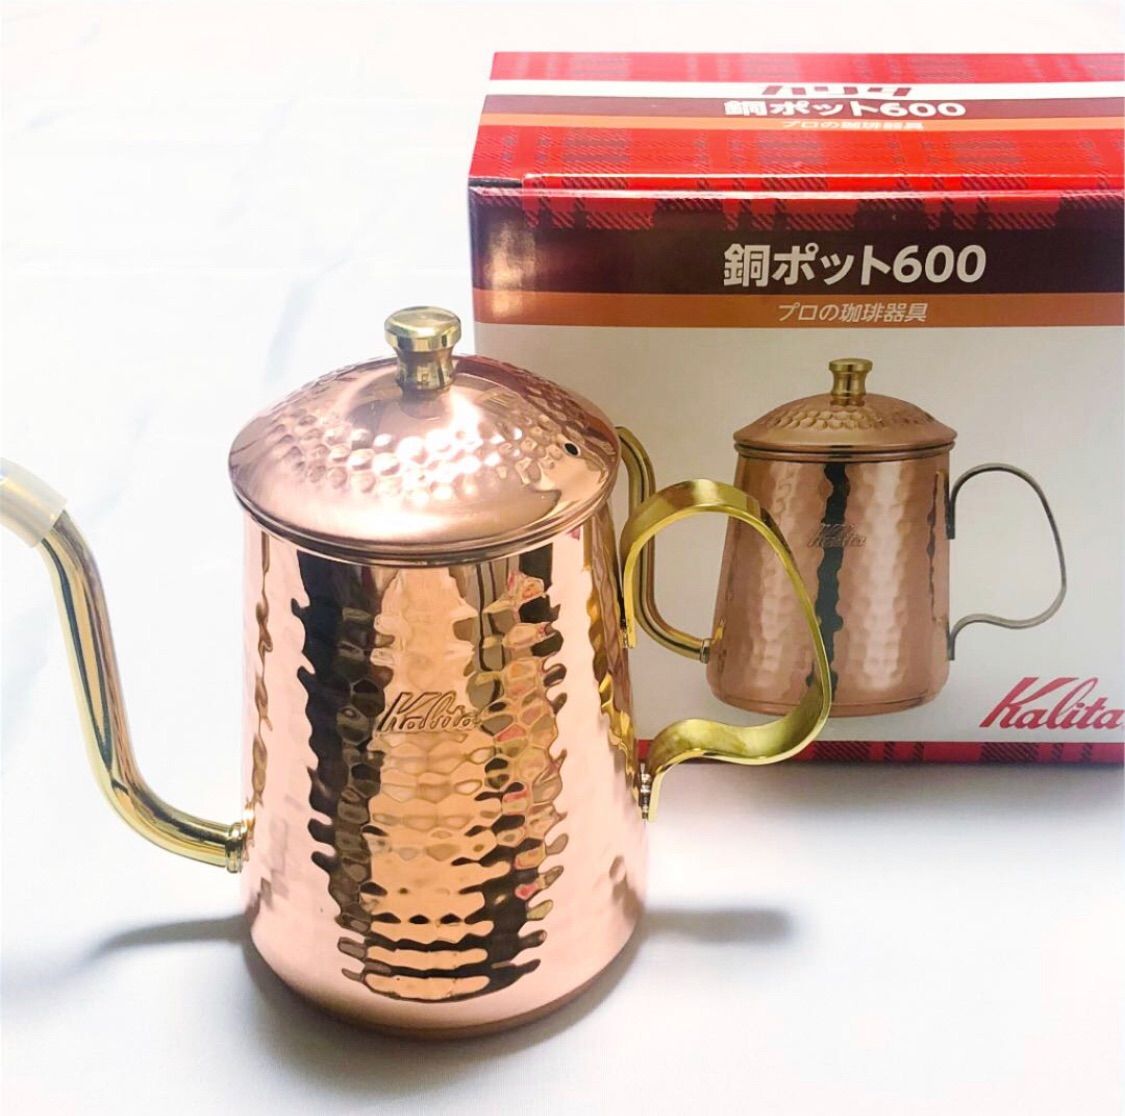 Kalita カリタ 銅製品 銅ポット600 コーヒーポット ケトル アウトドア